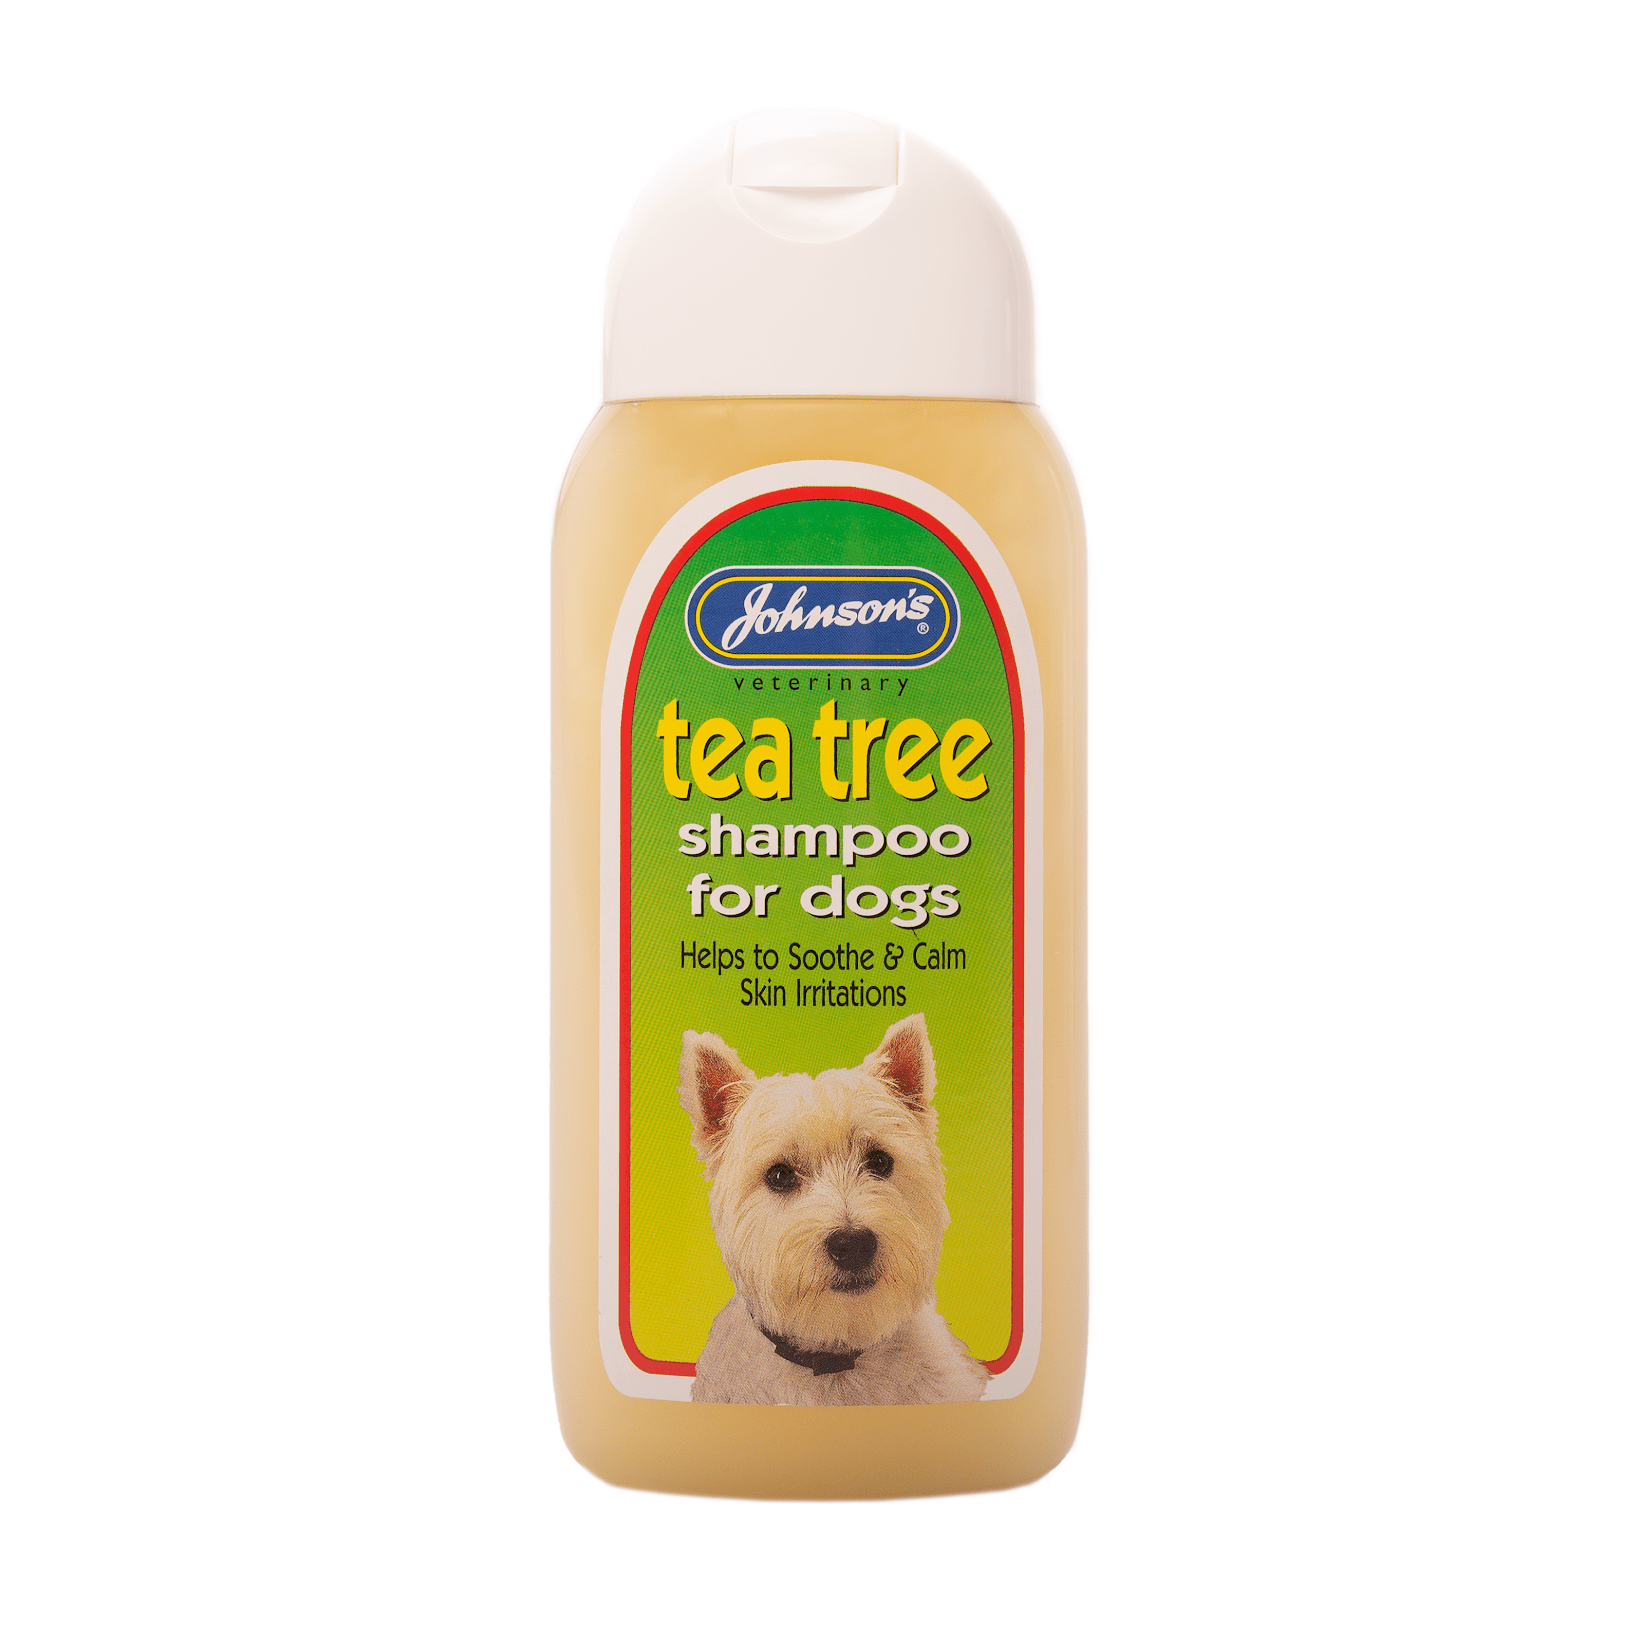 Johnsons Tea Tree Shampoo for Dogs 200ml (x6), Johnsons Veterinary,